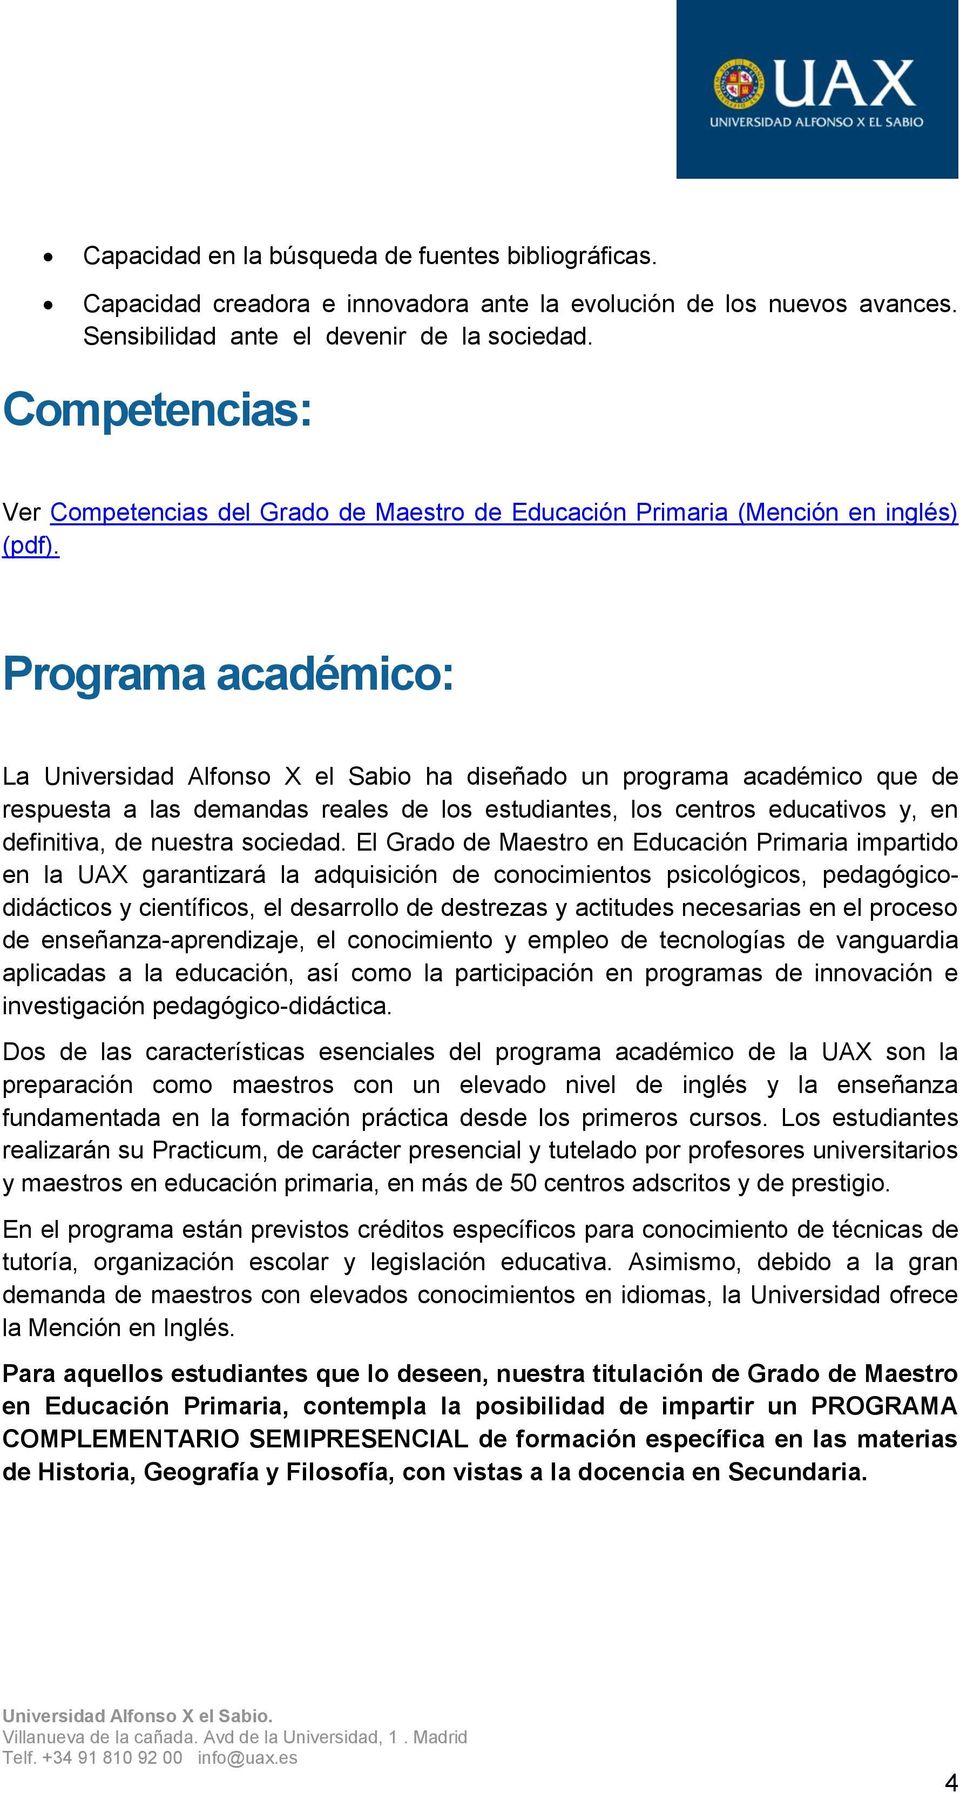 Programa académico: La Universidad Alfonso X el Sabio ha diseñado un programa académico que de respuesta a las demandas reales de los estudiantes, los centros educativos y, en definitiva, de nuestra